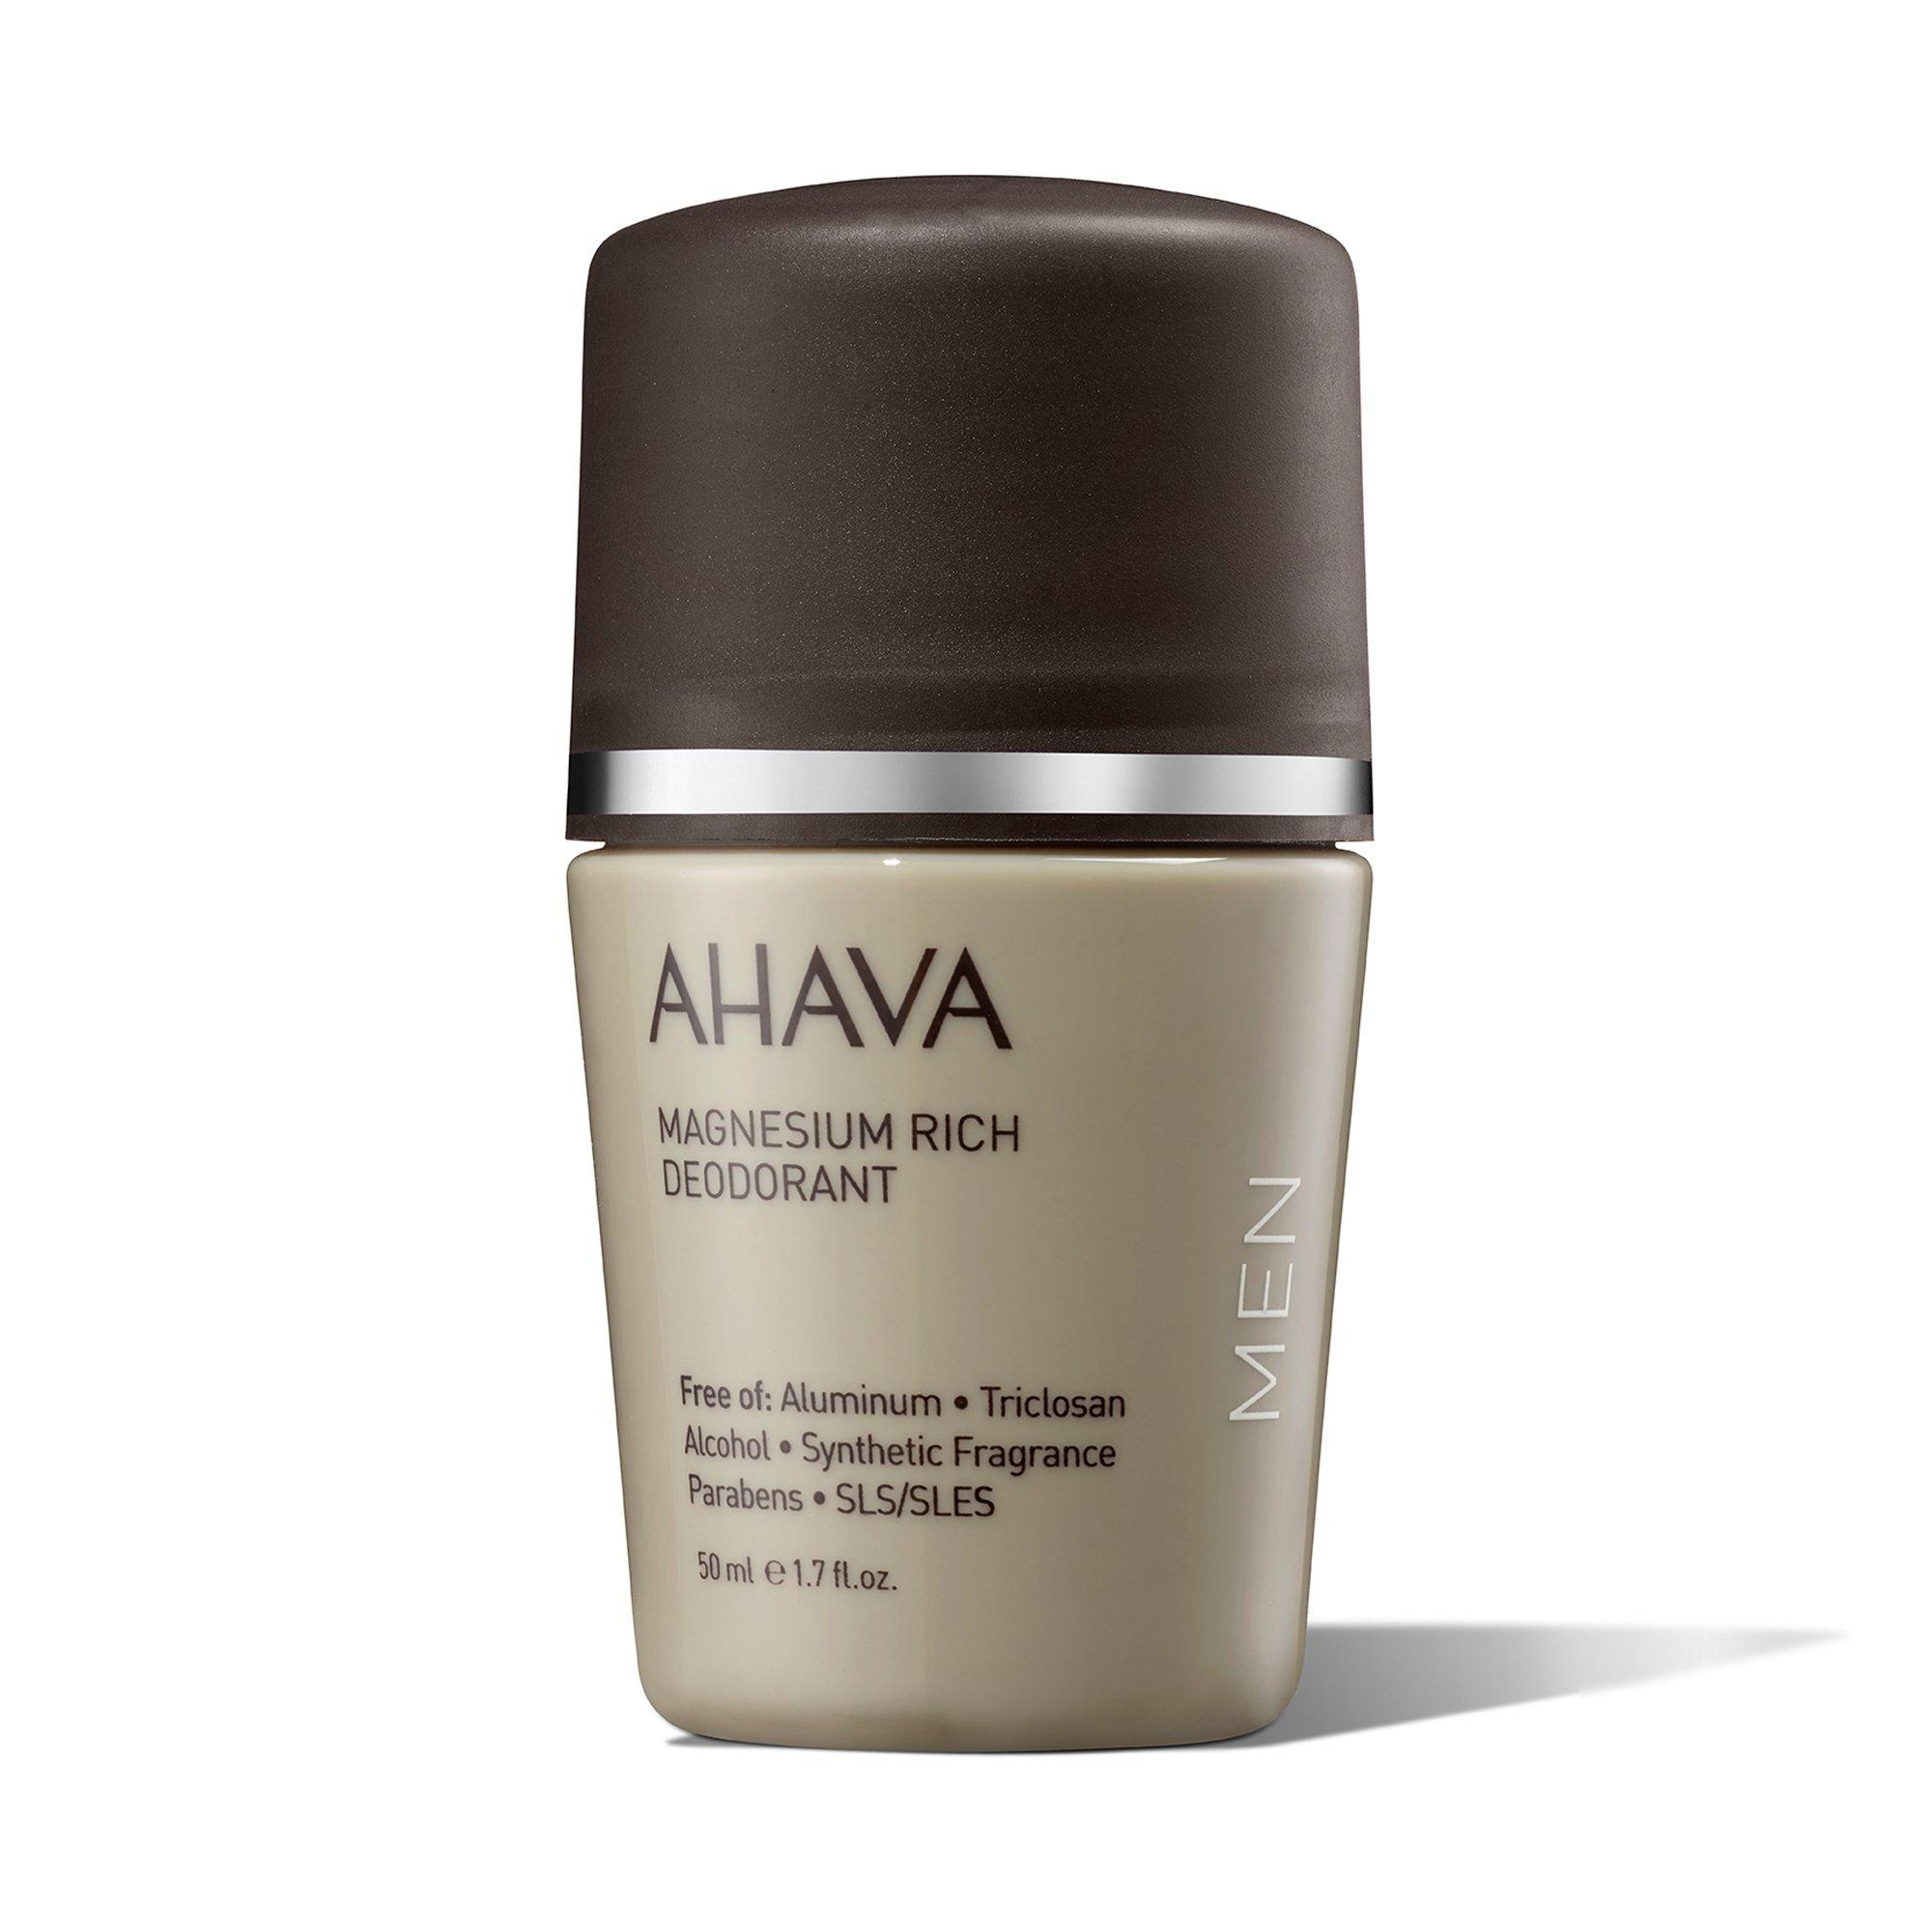 Image of AHAVA Magnesium Rich Deodorant for men Magnesium Rich Deodorant - 50ml